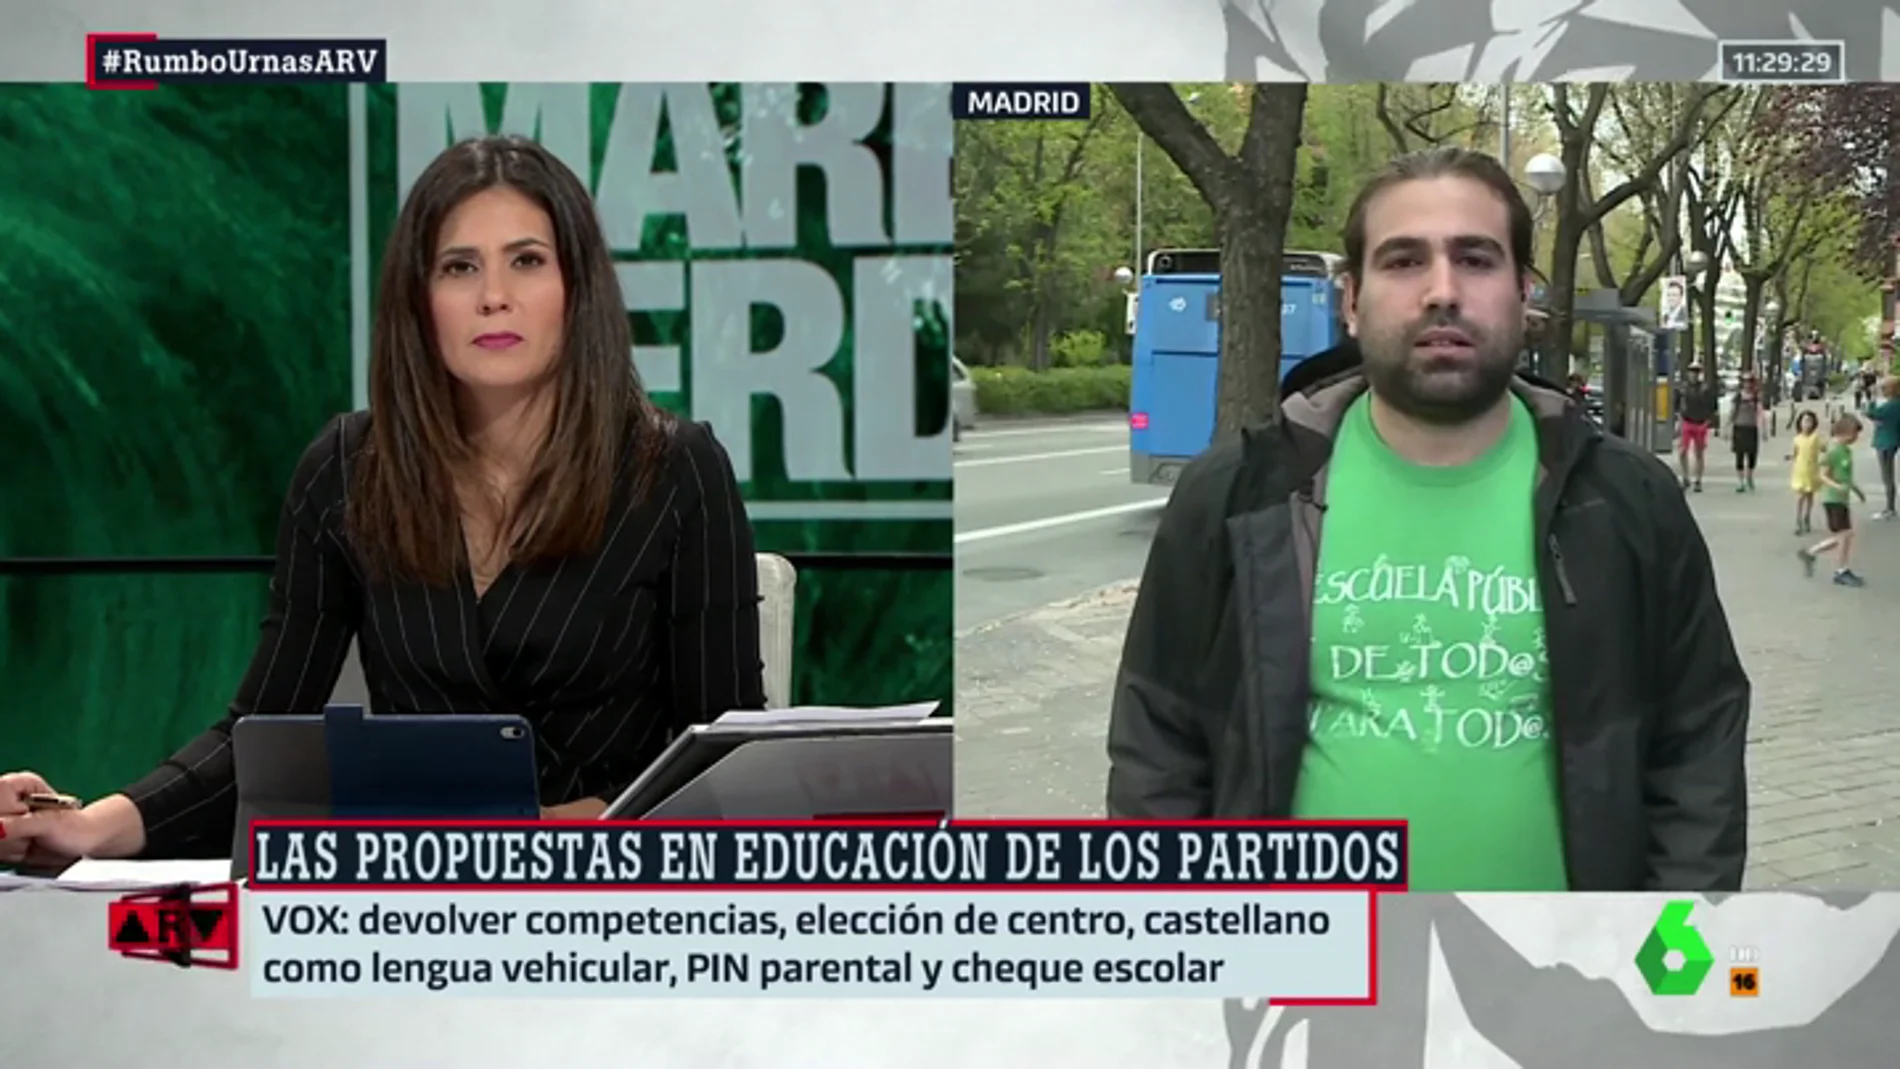 Jorge Castaño (Marea Verde) analiza las propuestas de los partidos en educación: "Ahora más de la mitad de financiación se va a la escuela concertada"